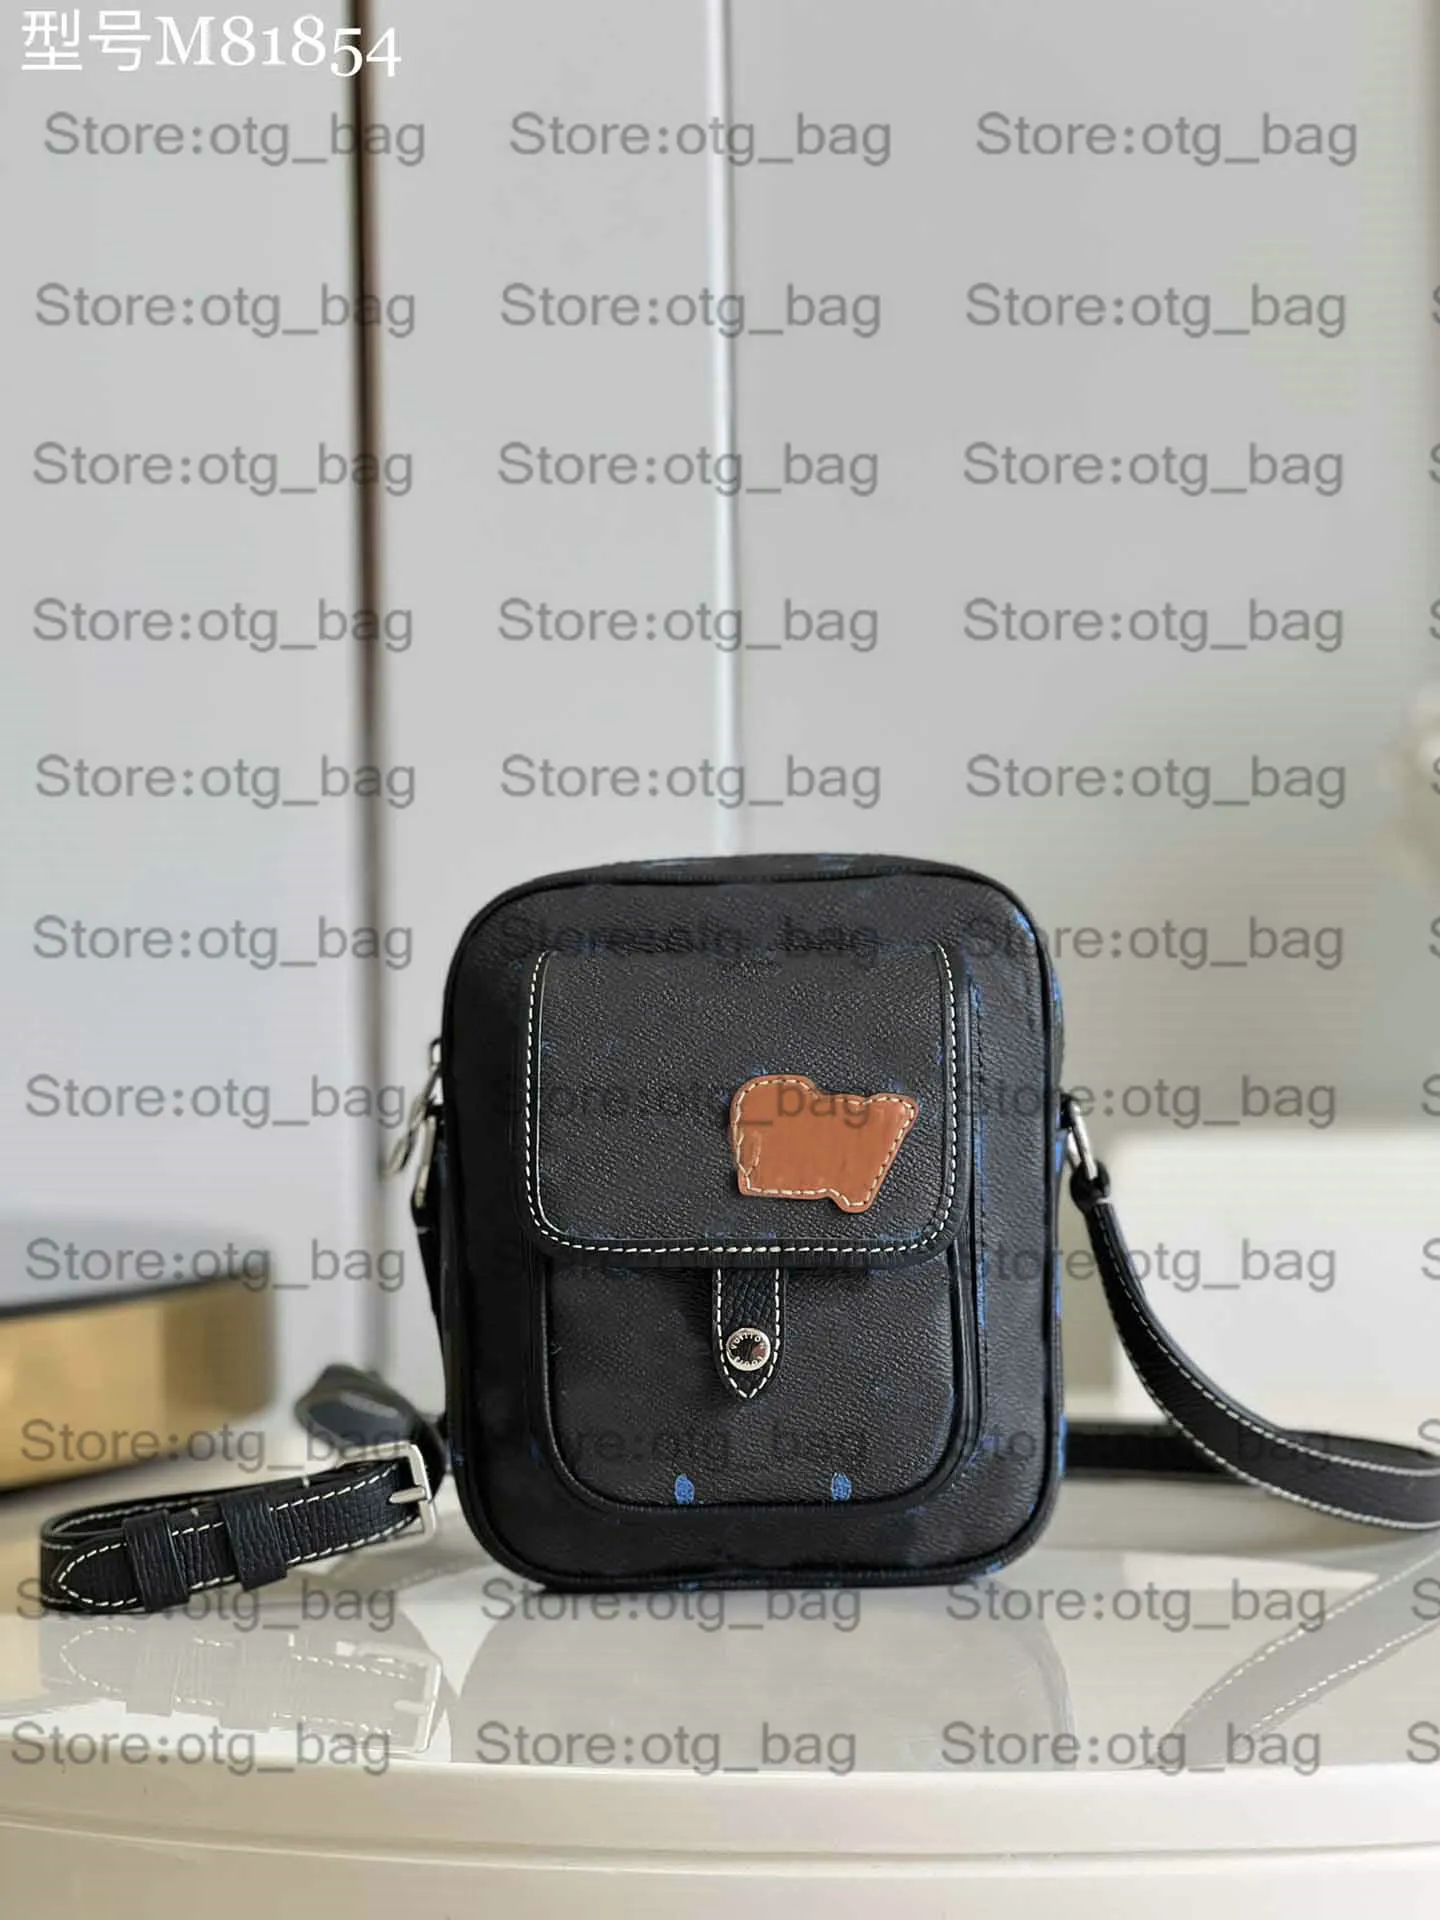 Sac portefeuille portable en cuir bleu pour homme - Mini bandoulière de luxe avec design 3D - Idéal pour une utilisation à l'épaule ou en bandoulière (M69404/M81854/M80793)